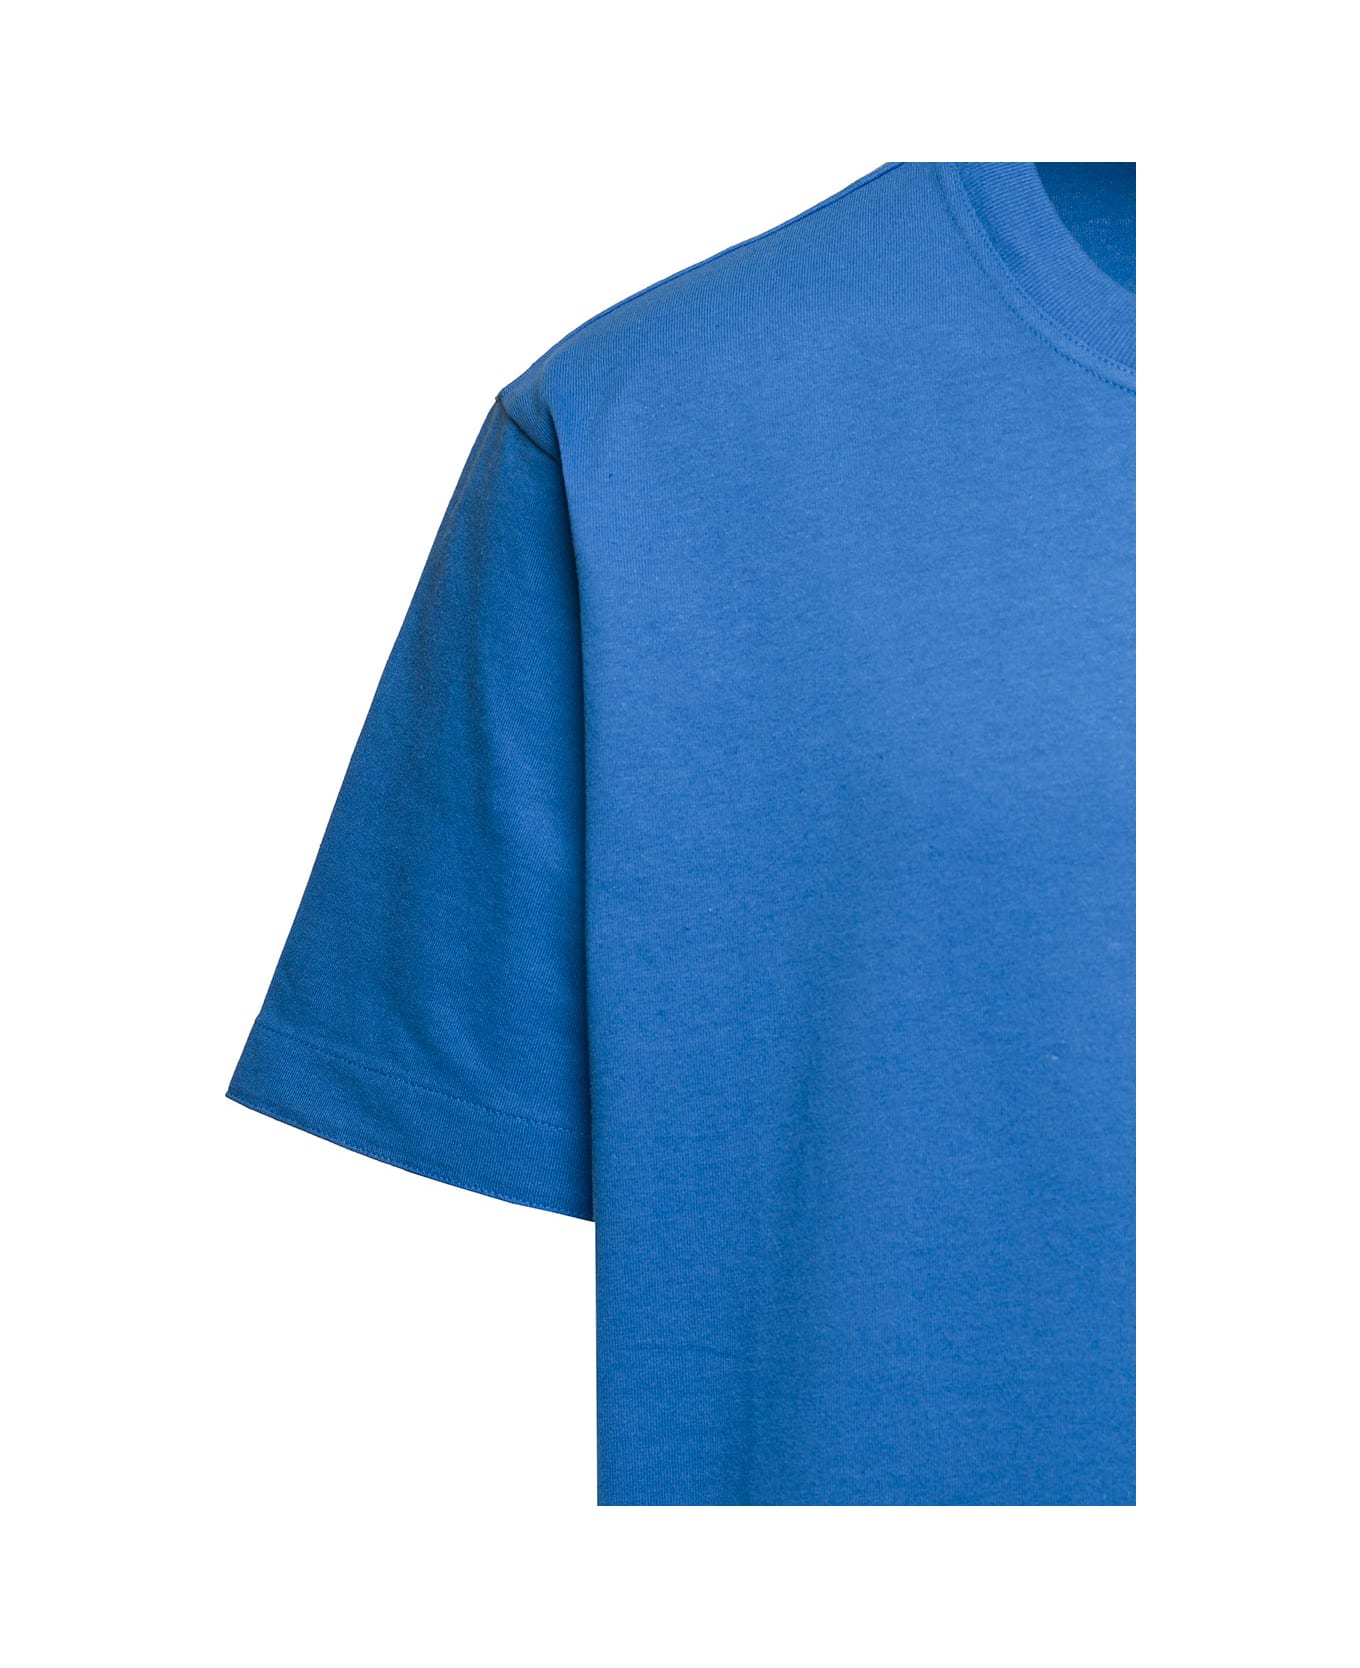 Bottega Veneta Sunrise Cotton T-shirt - Surf シャツ